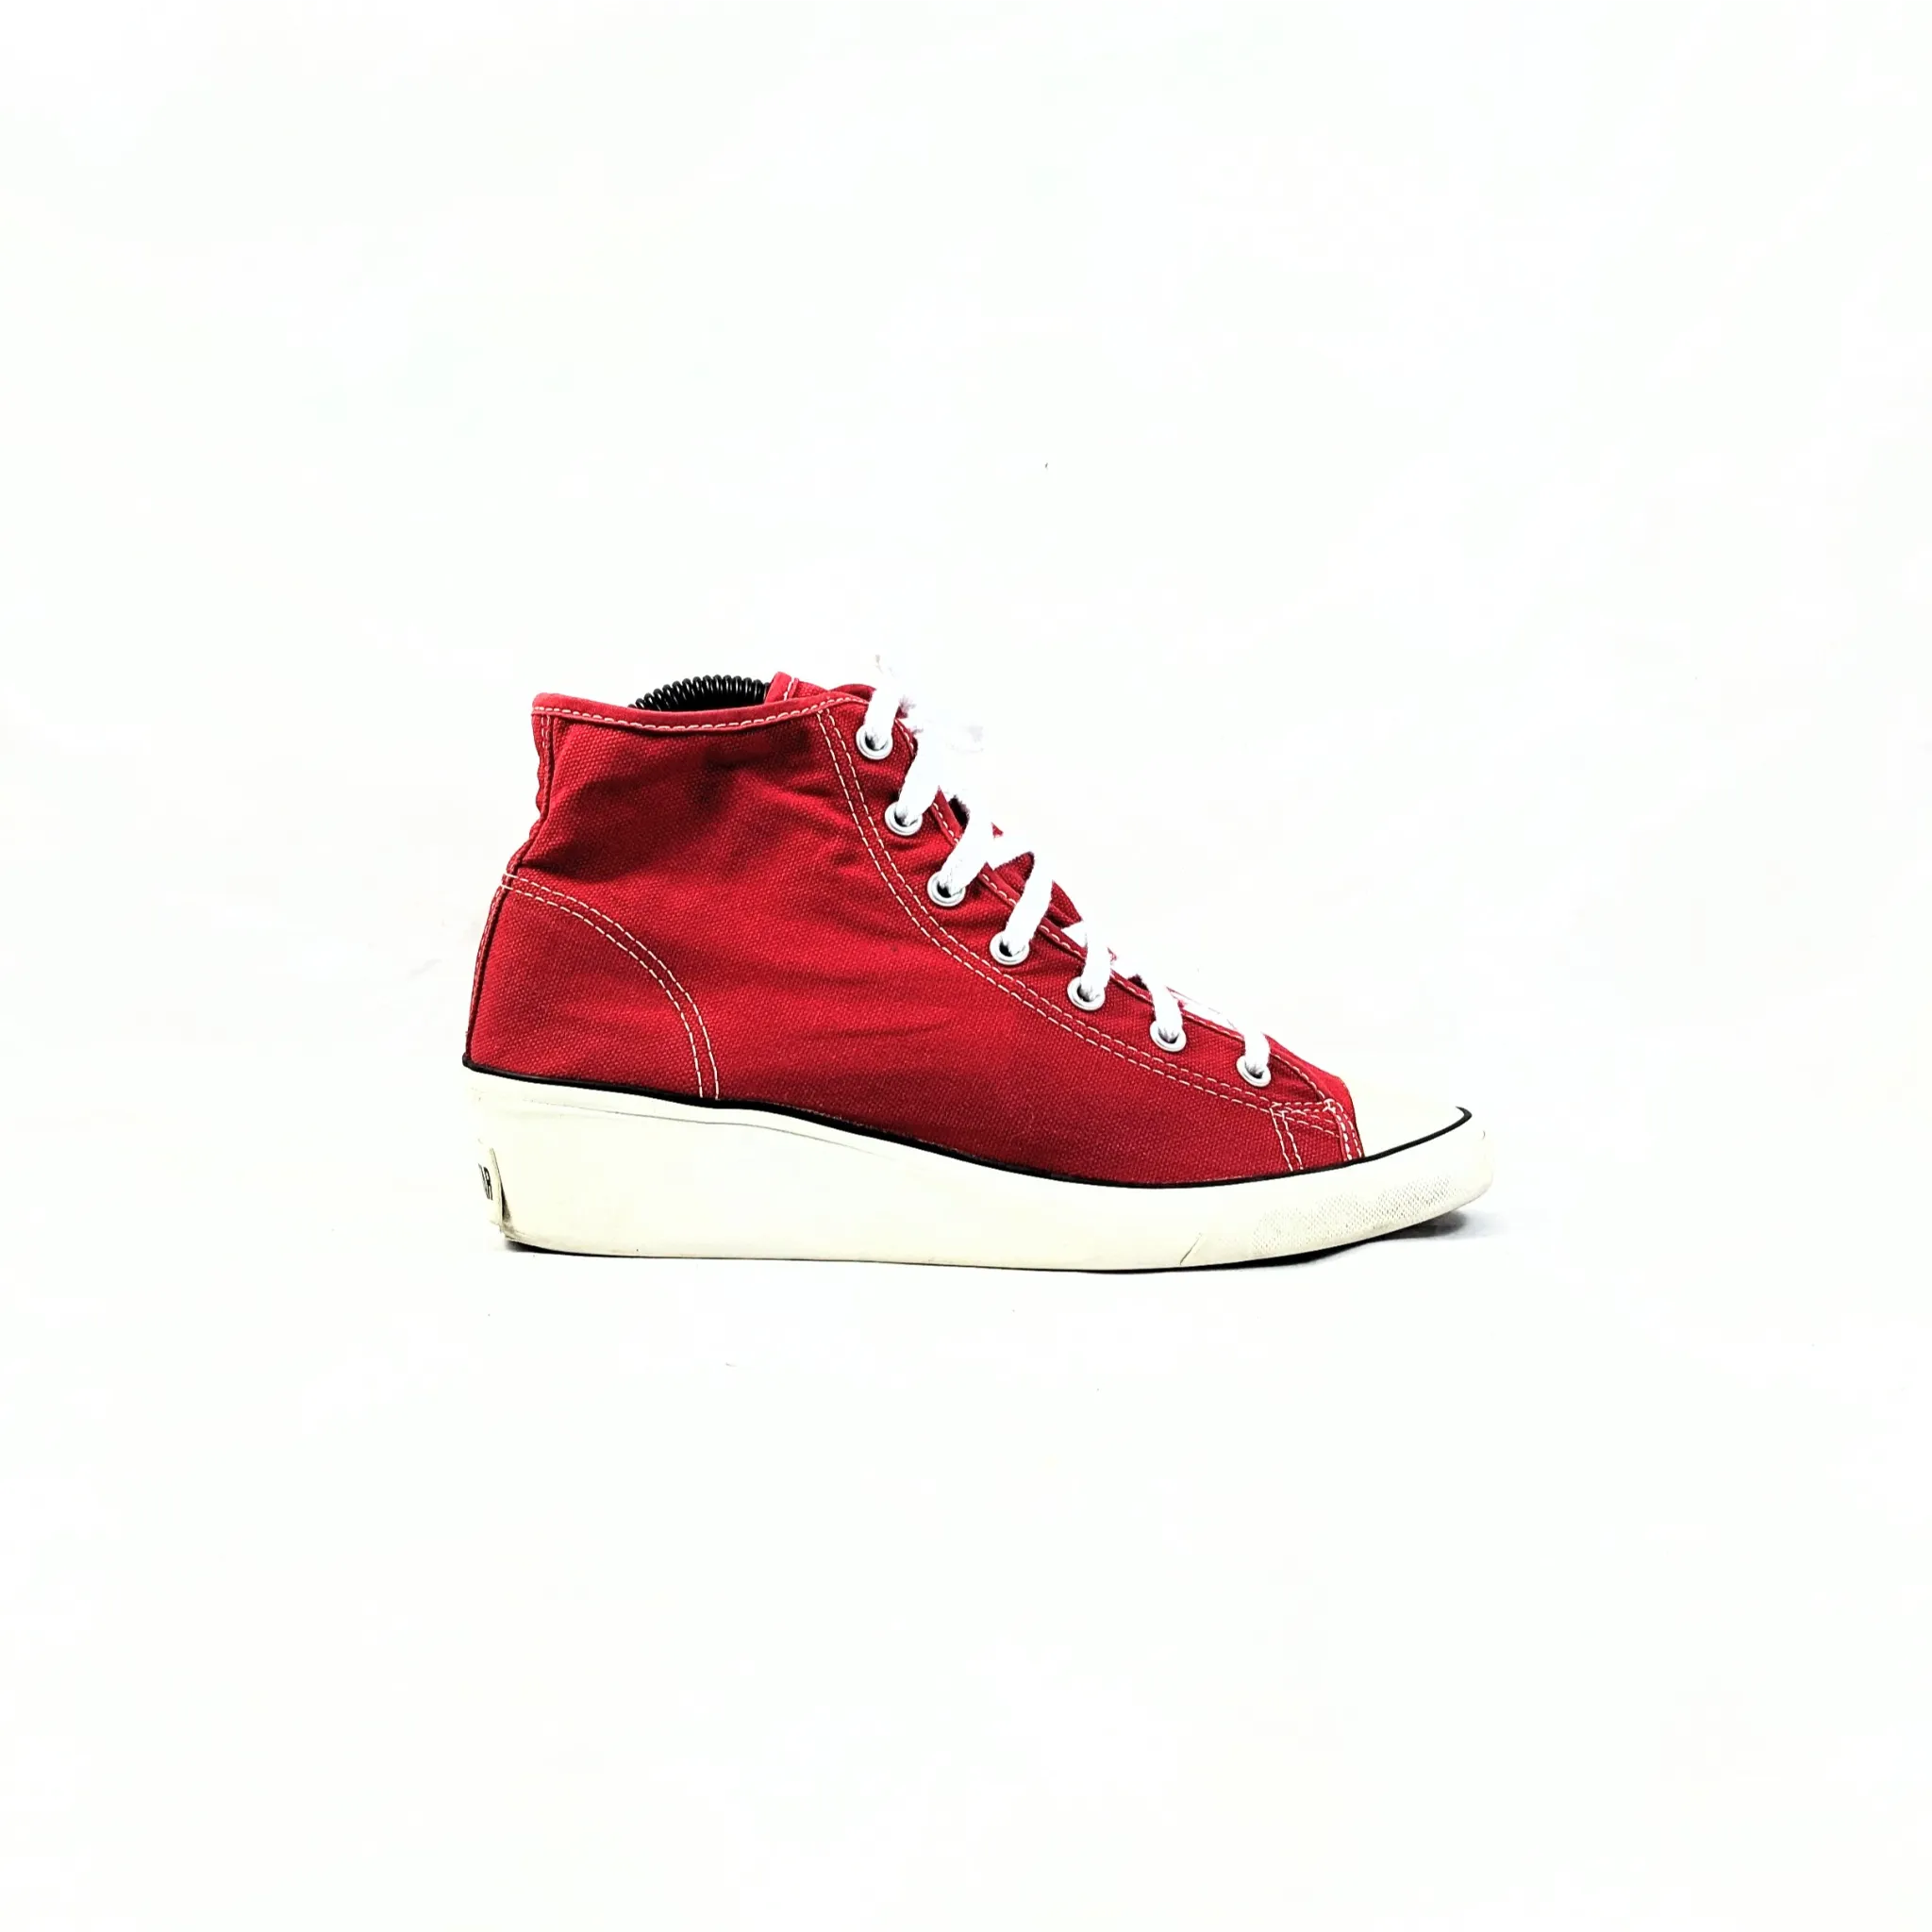 Converse Red Sneakers Premium C